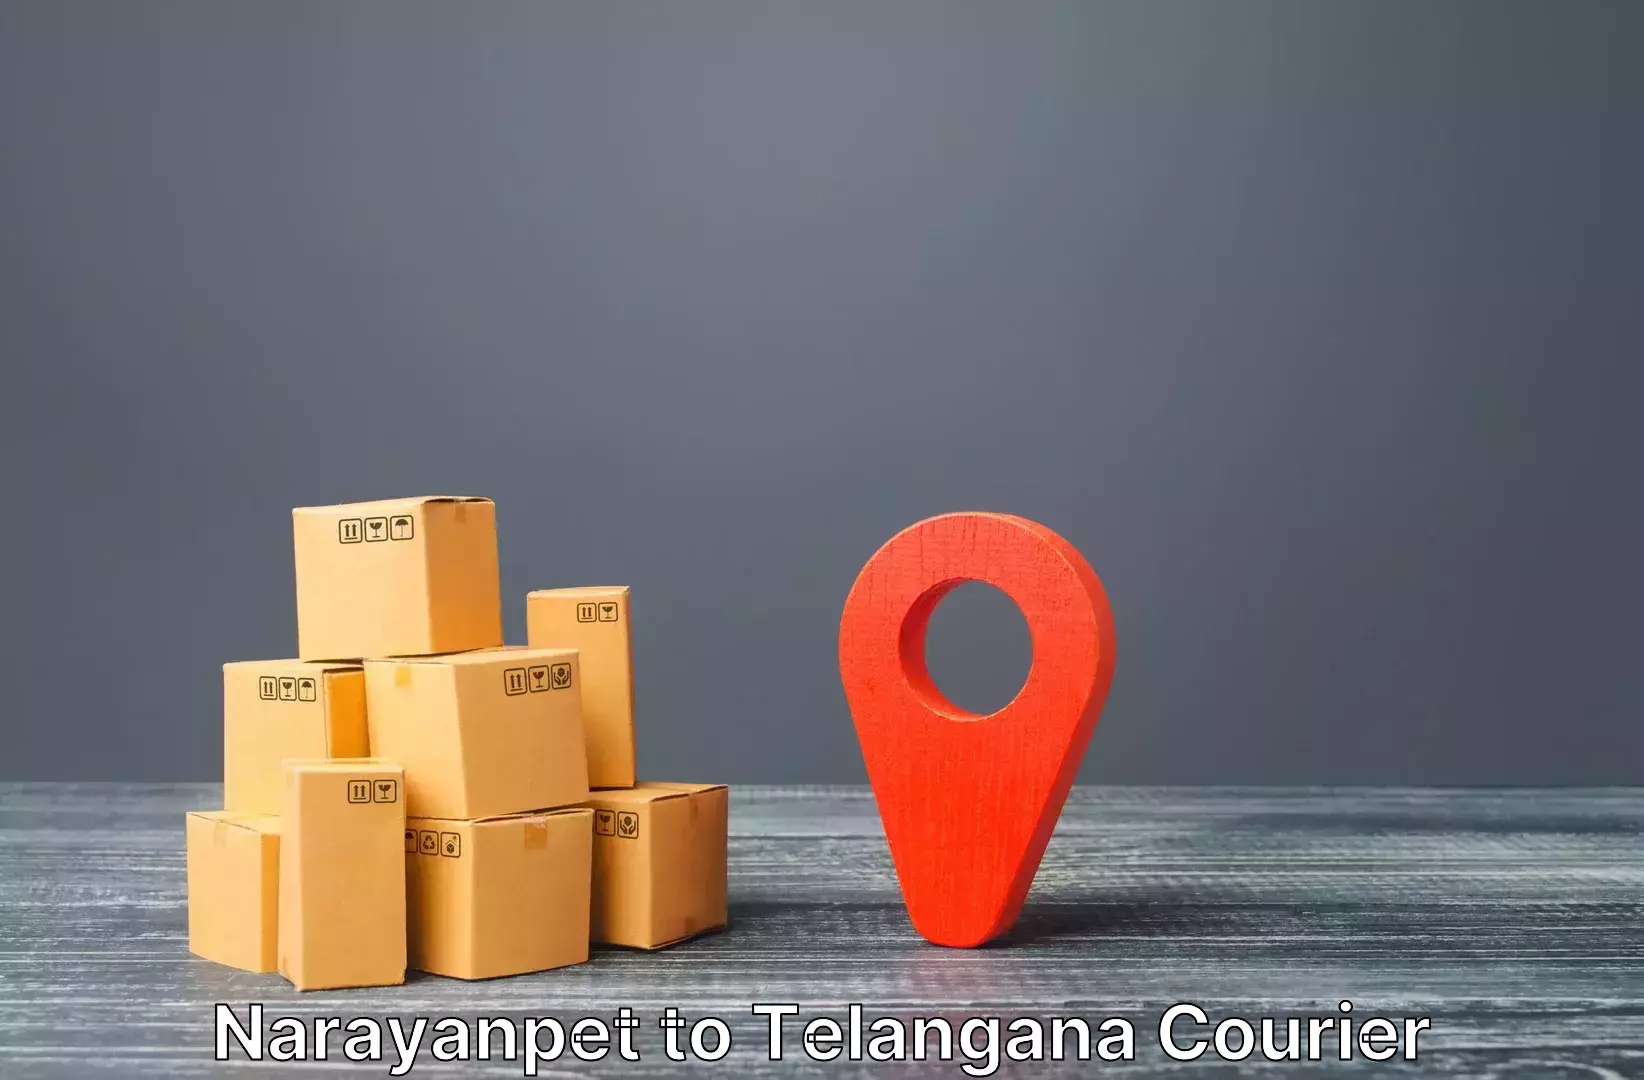 Luggage transfer service Narayanpet to Mogulla Pally